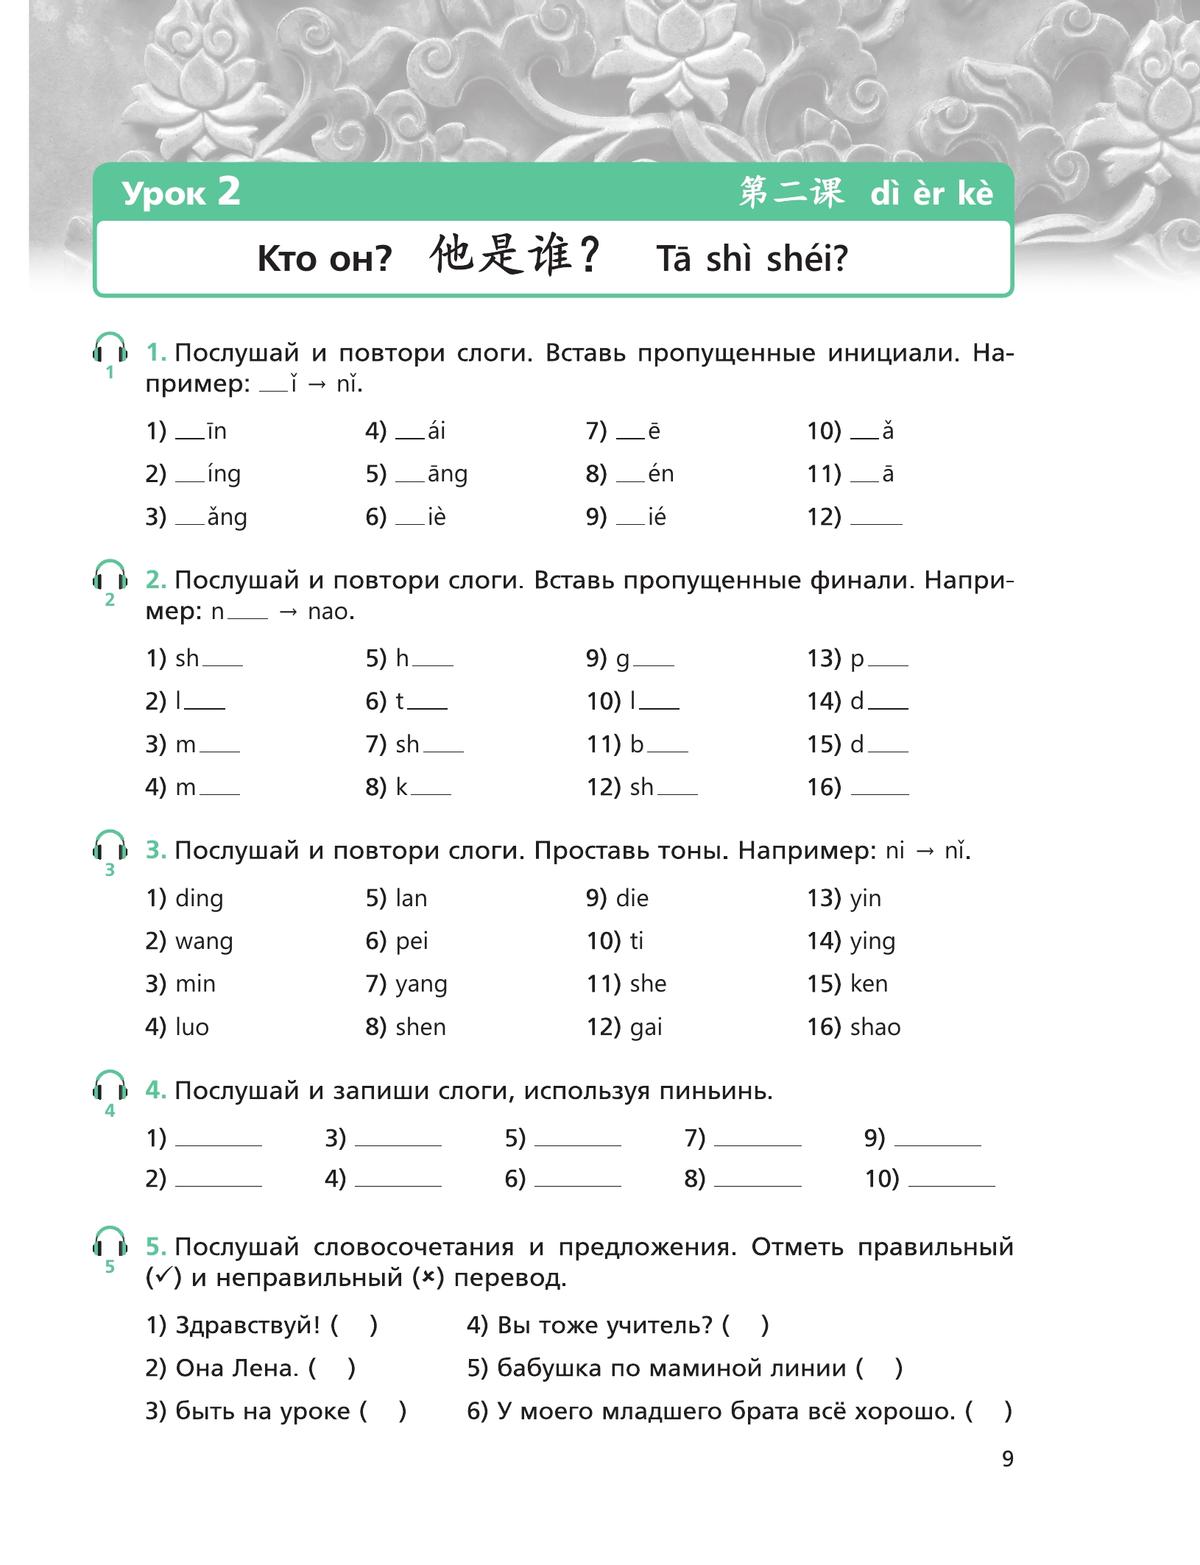 Китайский язык. Второй иностранный язык. Рабочая тетрадь. 5 класс 5